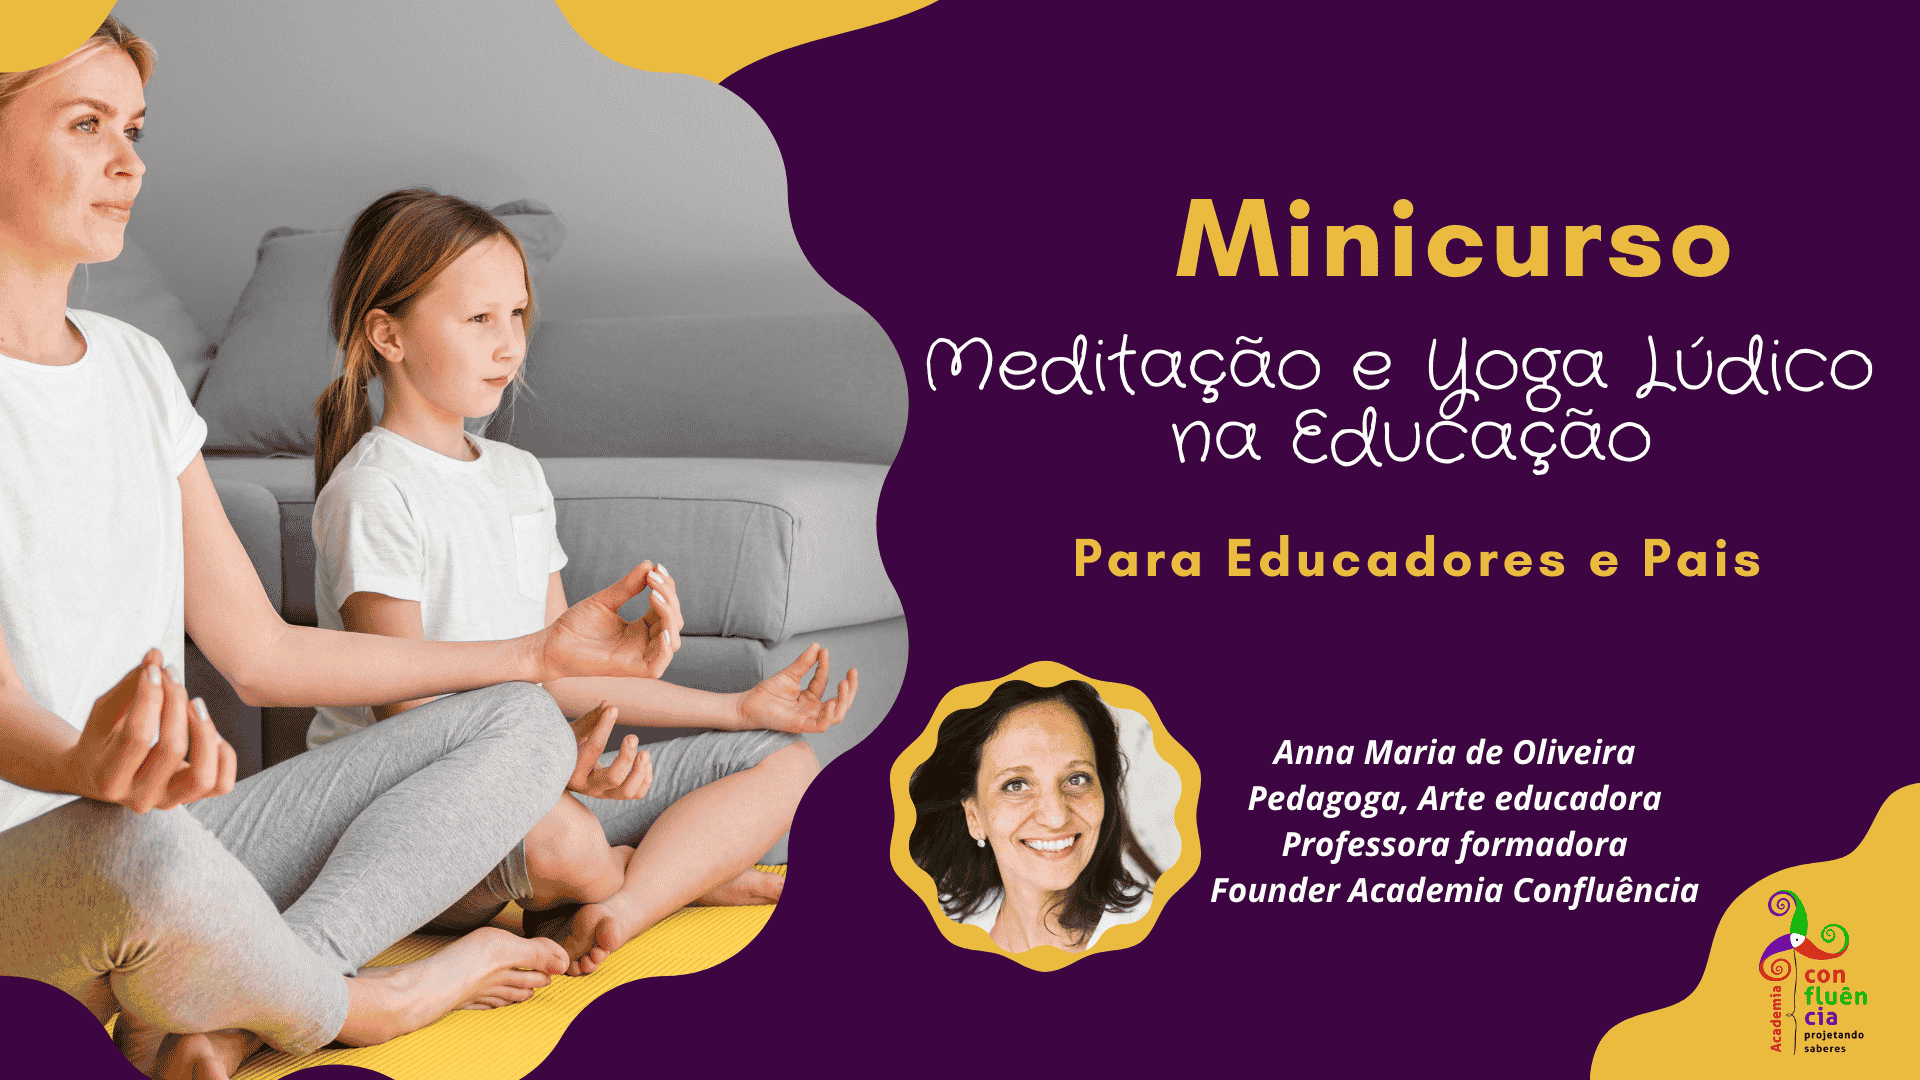 Banner de divulgação do Minicurso Meditação e Yoga Lúdico na Educação, com informações sobre a facilitadora.